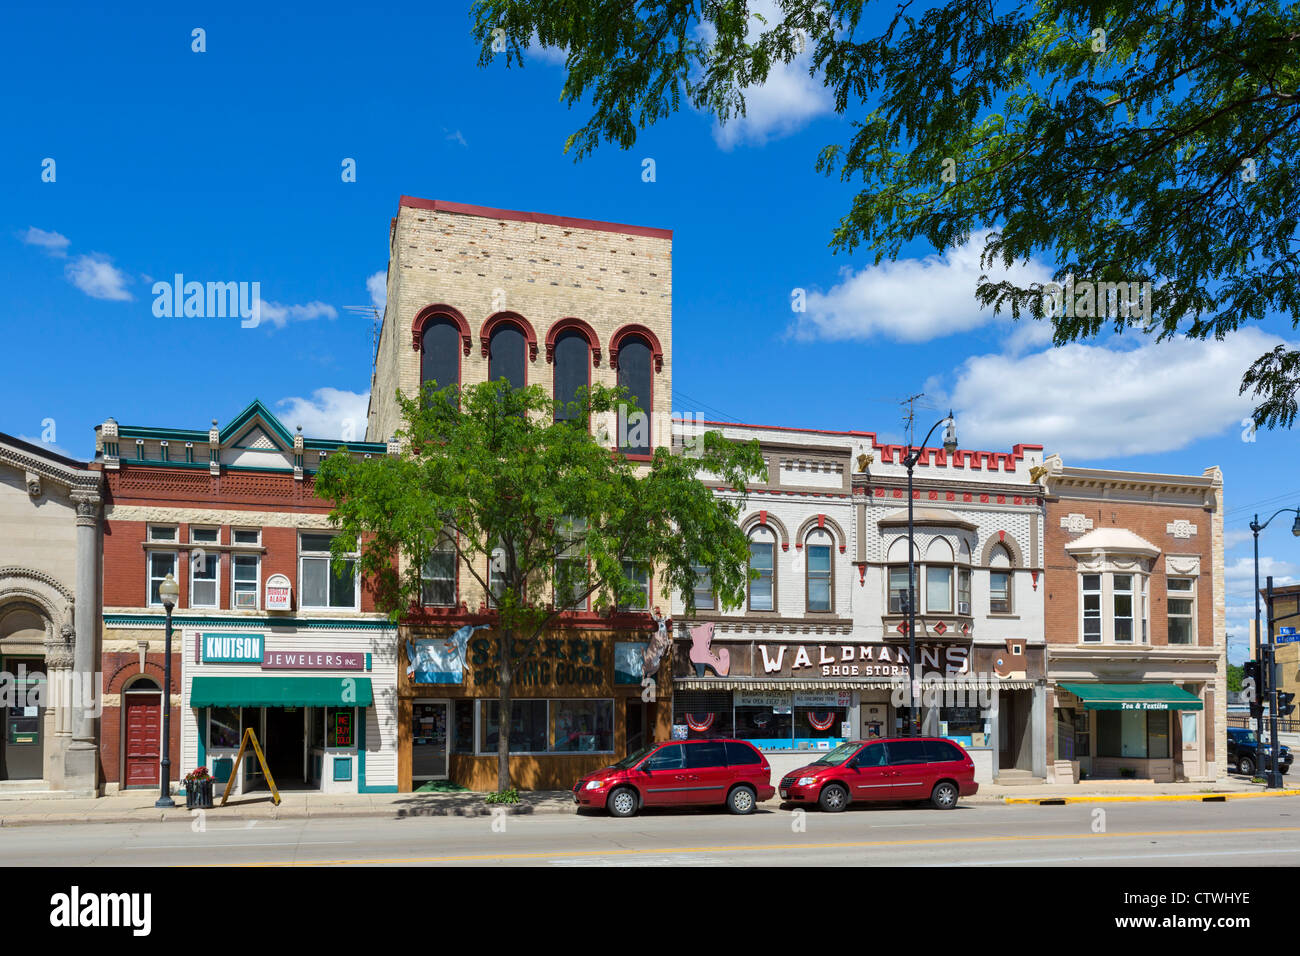 Traditionellen Geschäften auf der Main Street in einer amerikanischen Kleinstadt, Jefferson, Wisconsin, USA Stockfoto